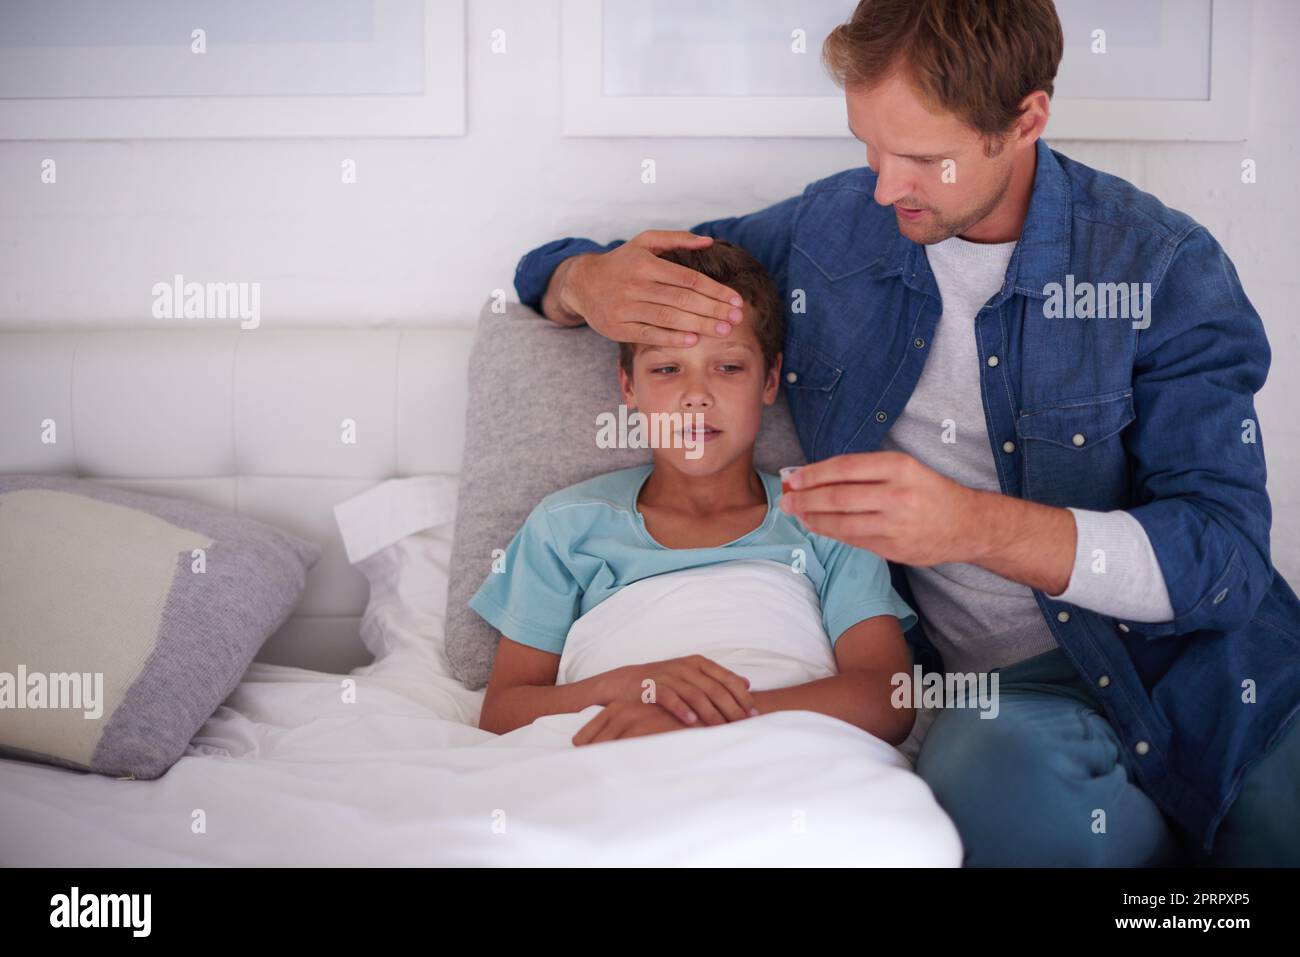 Papà sa bene: Un padre si prende cura del suo ragazzino ammalato a casa. Foto Stock